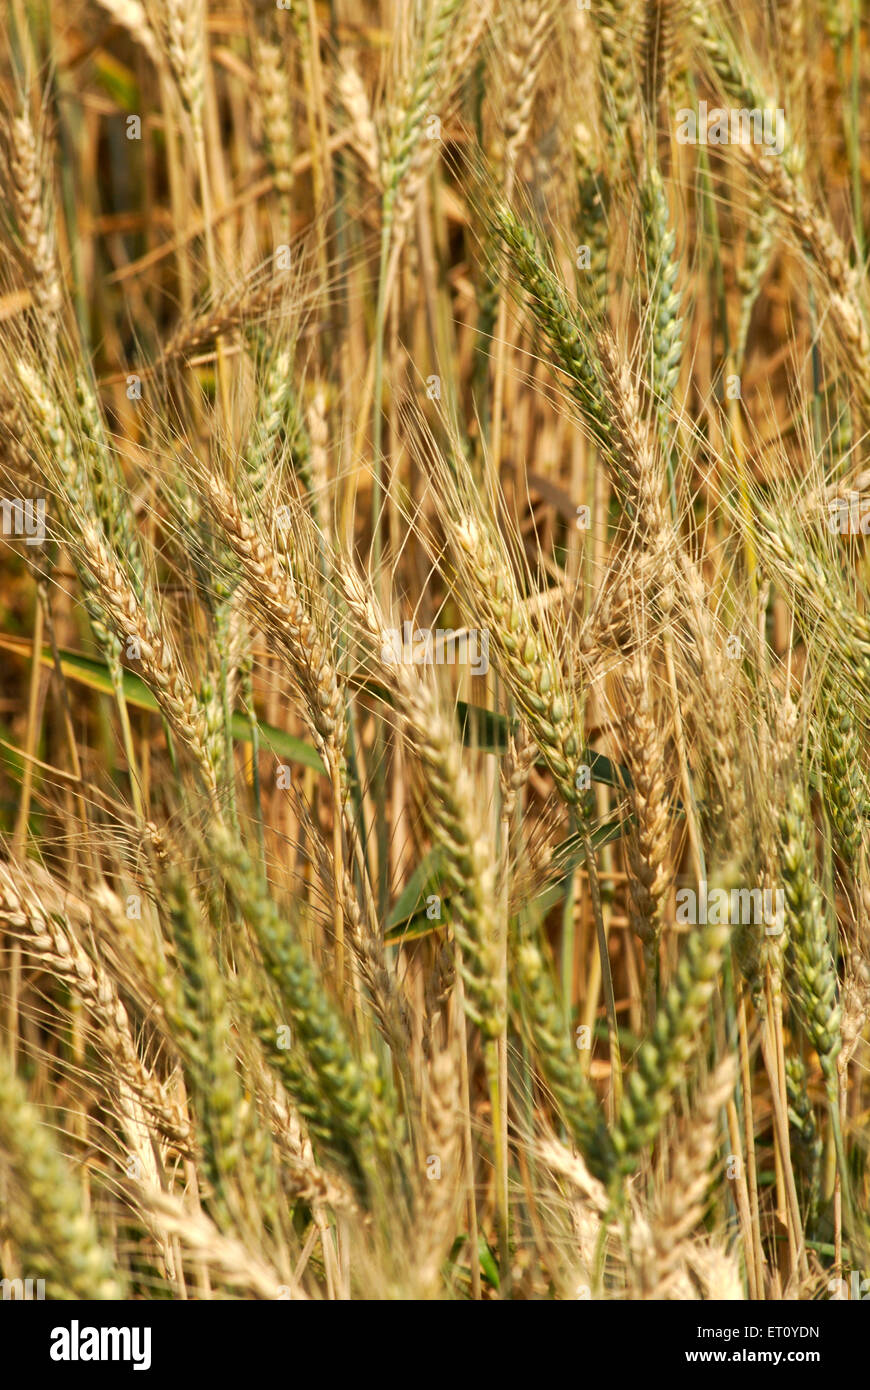 Culture de blé prête pour la récolte, village Urli Kanchan, Pune, Maharashtra, Inde Banque D'Images